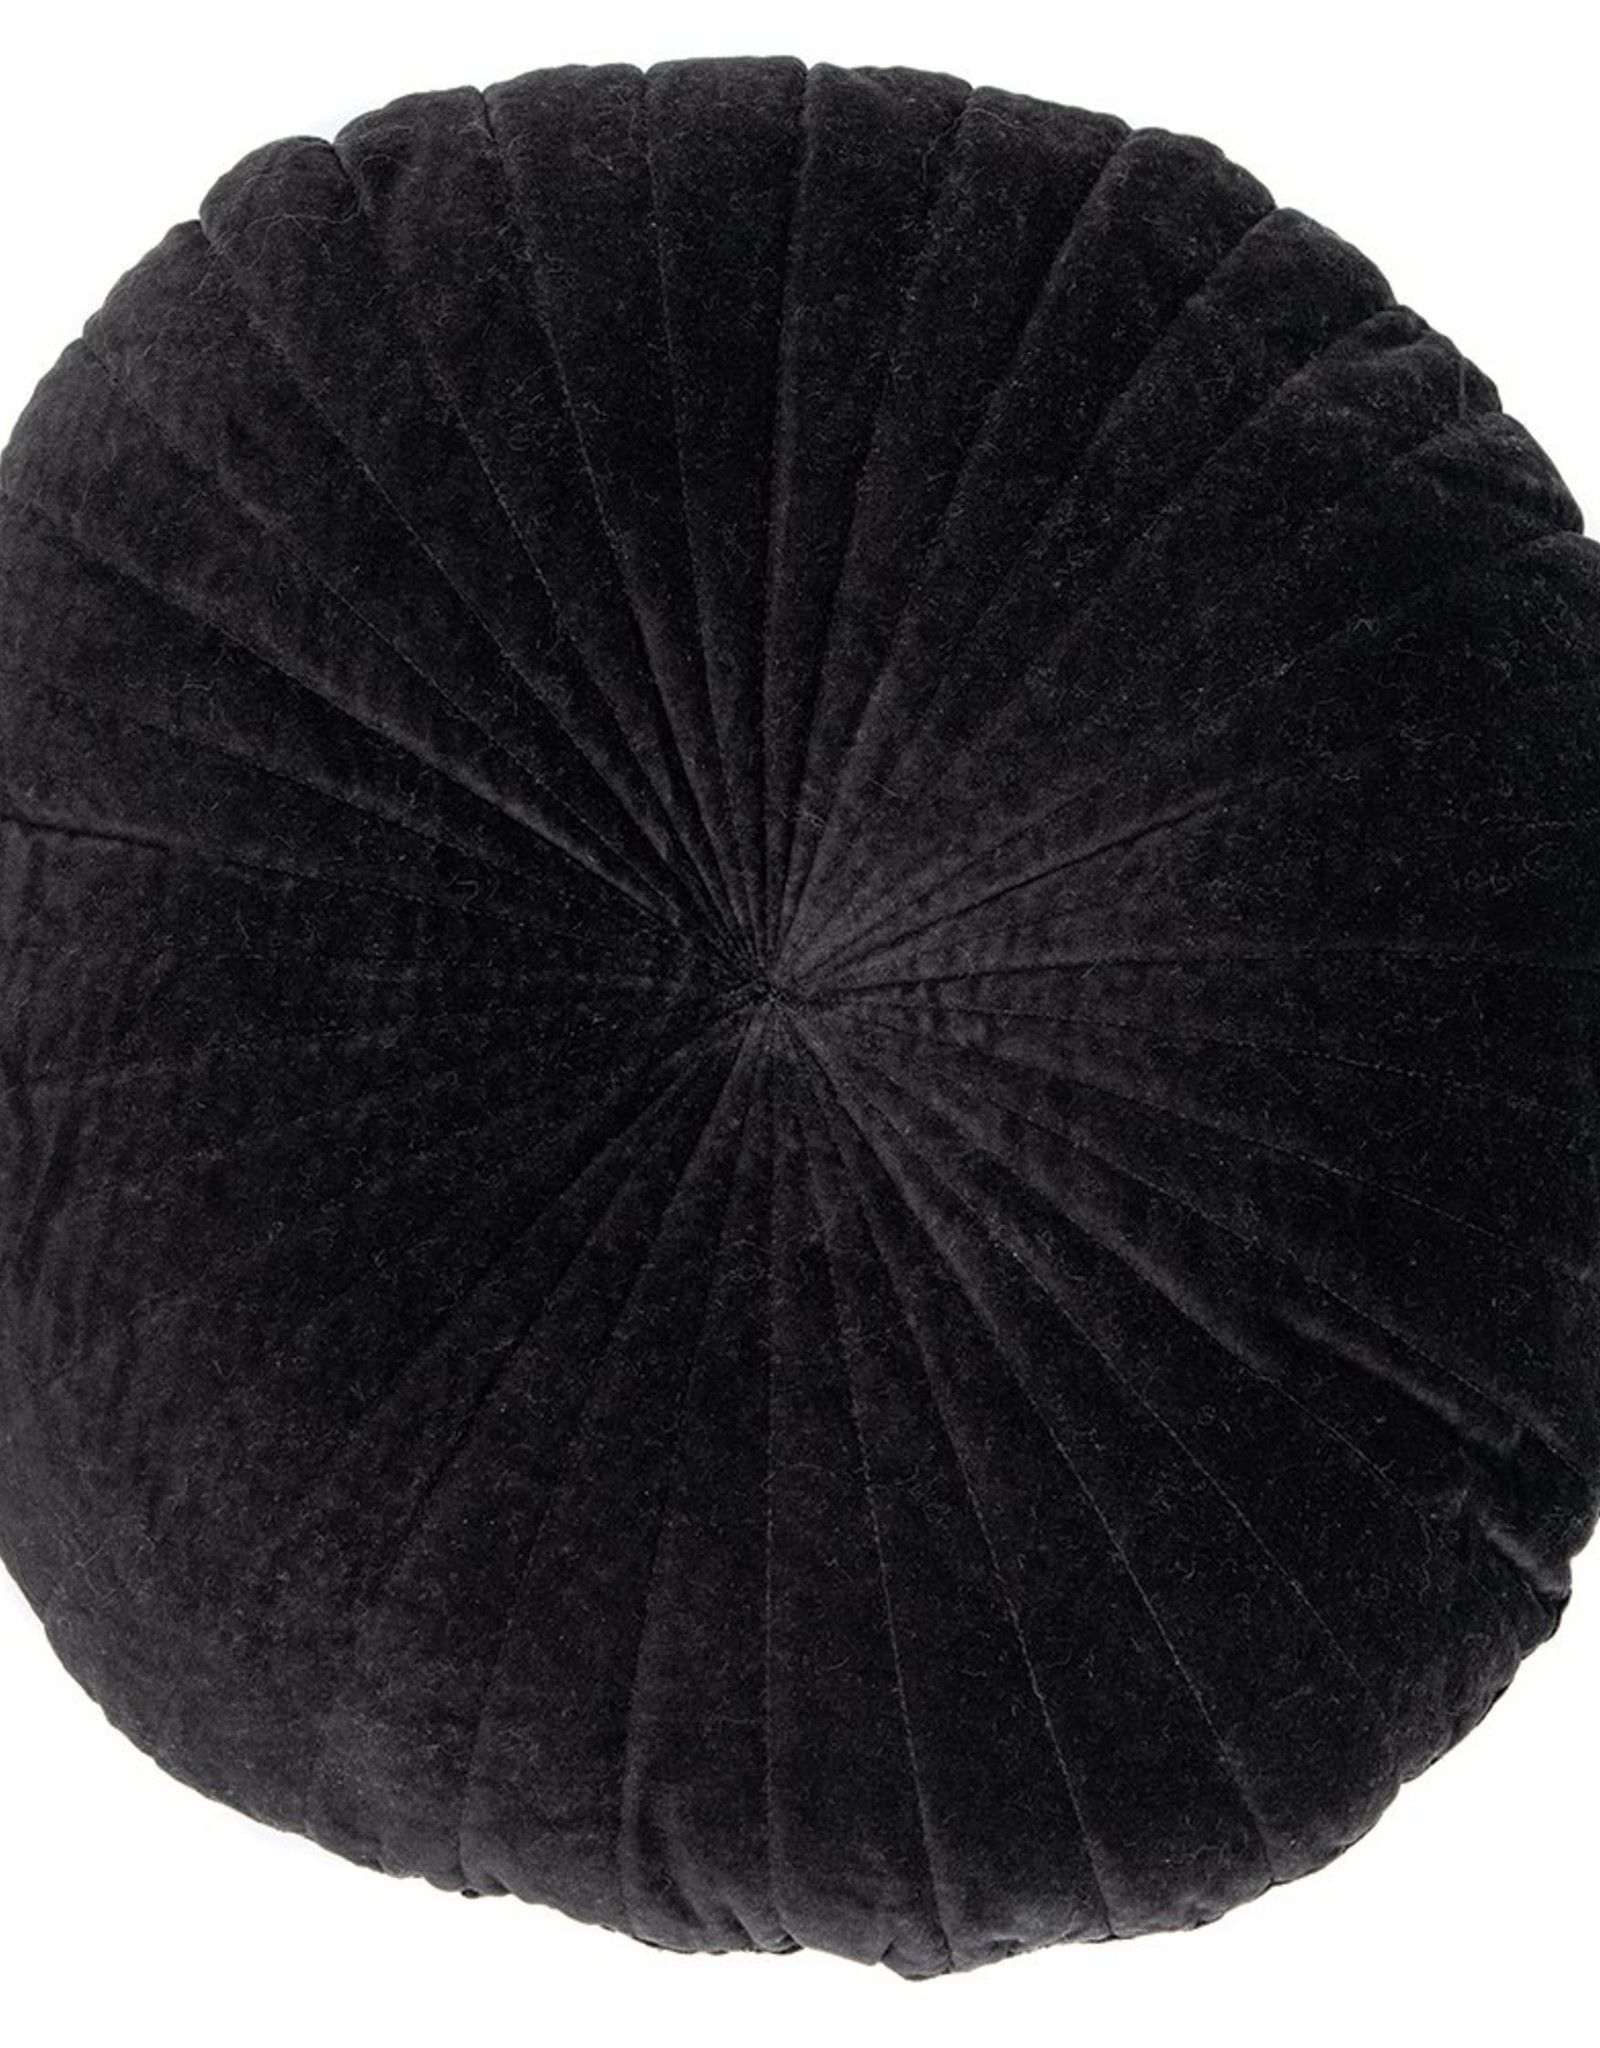 Cushions Brunelli Velvet Black Round 18”  9011BK116RD